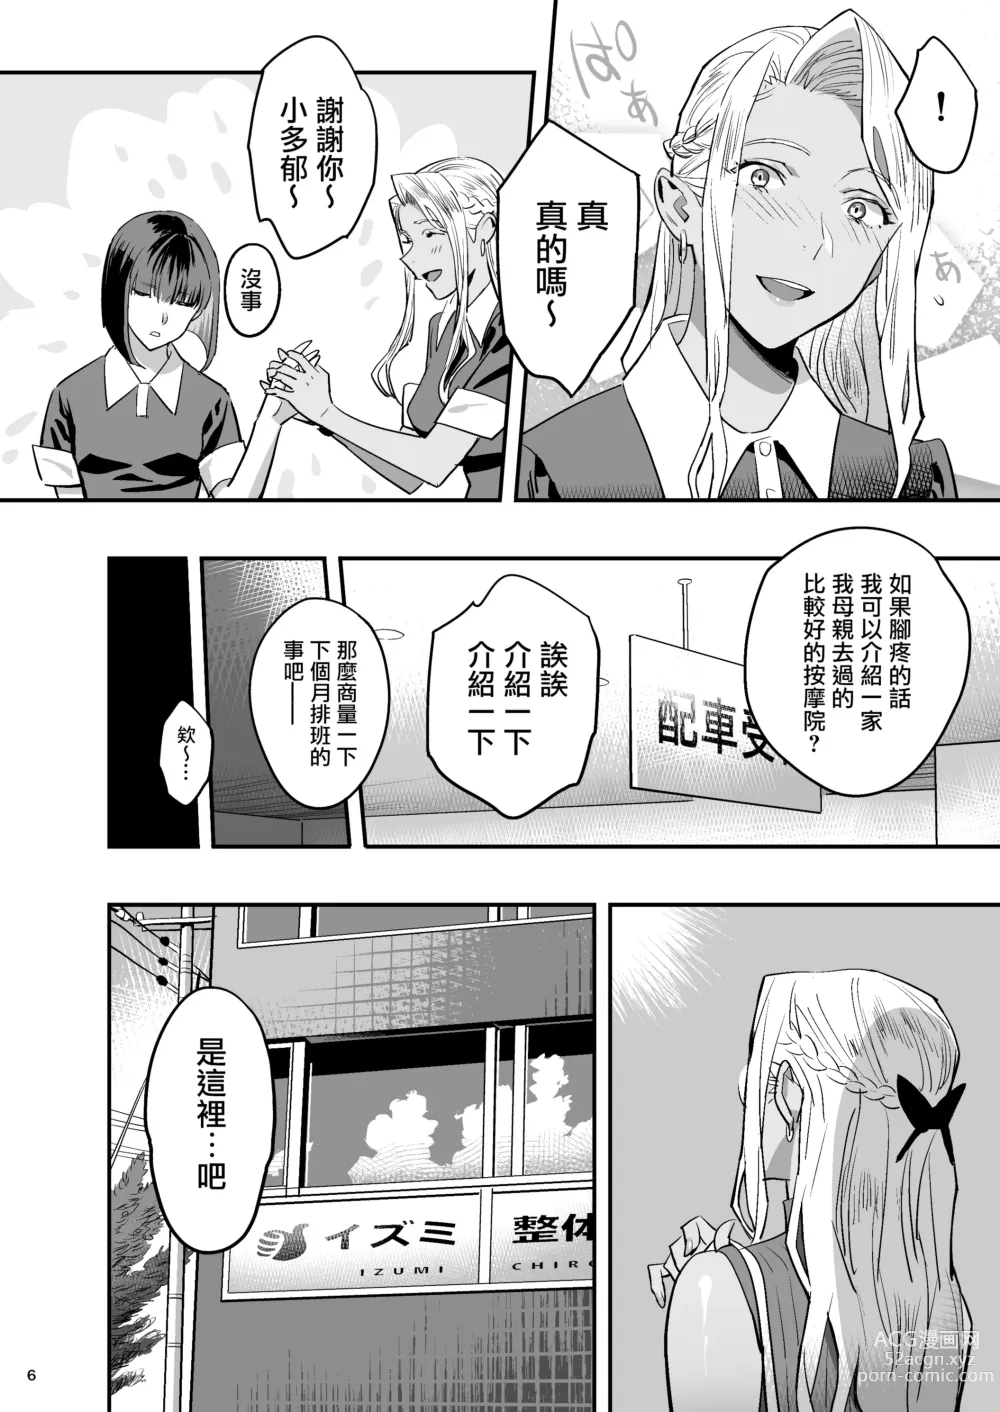 Page 5 of doujinshi Watashi ga Saki ni Suki datta no ni Seitai.